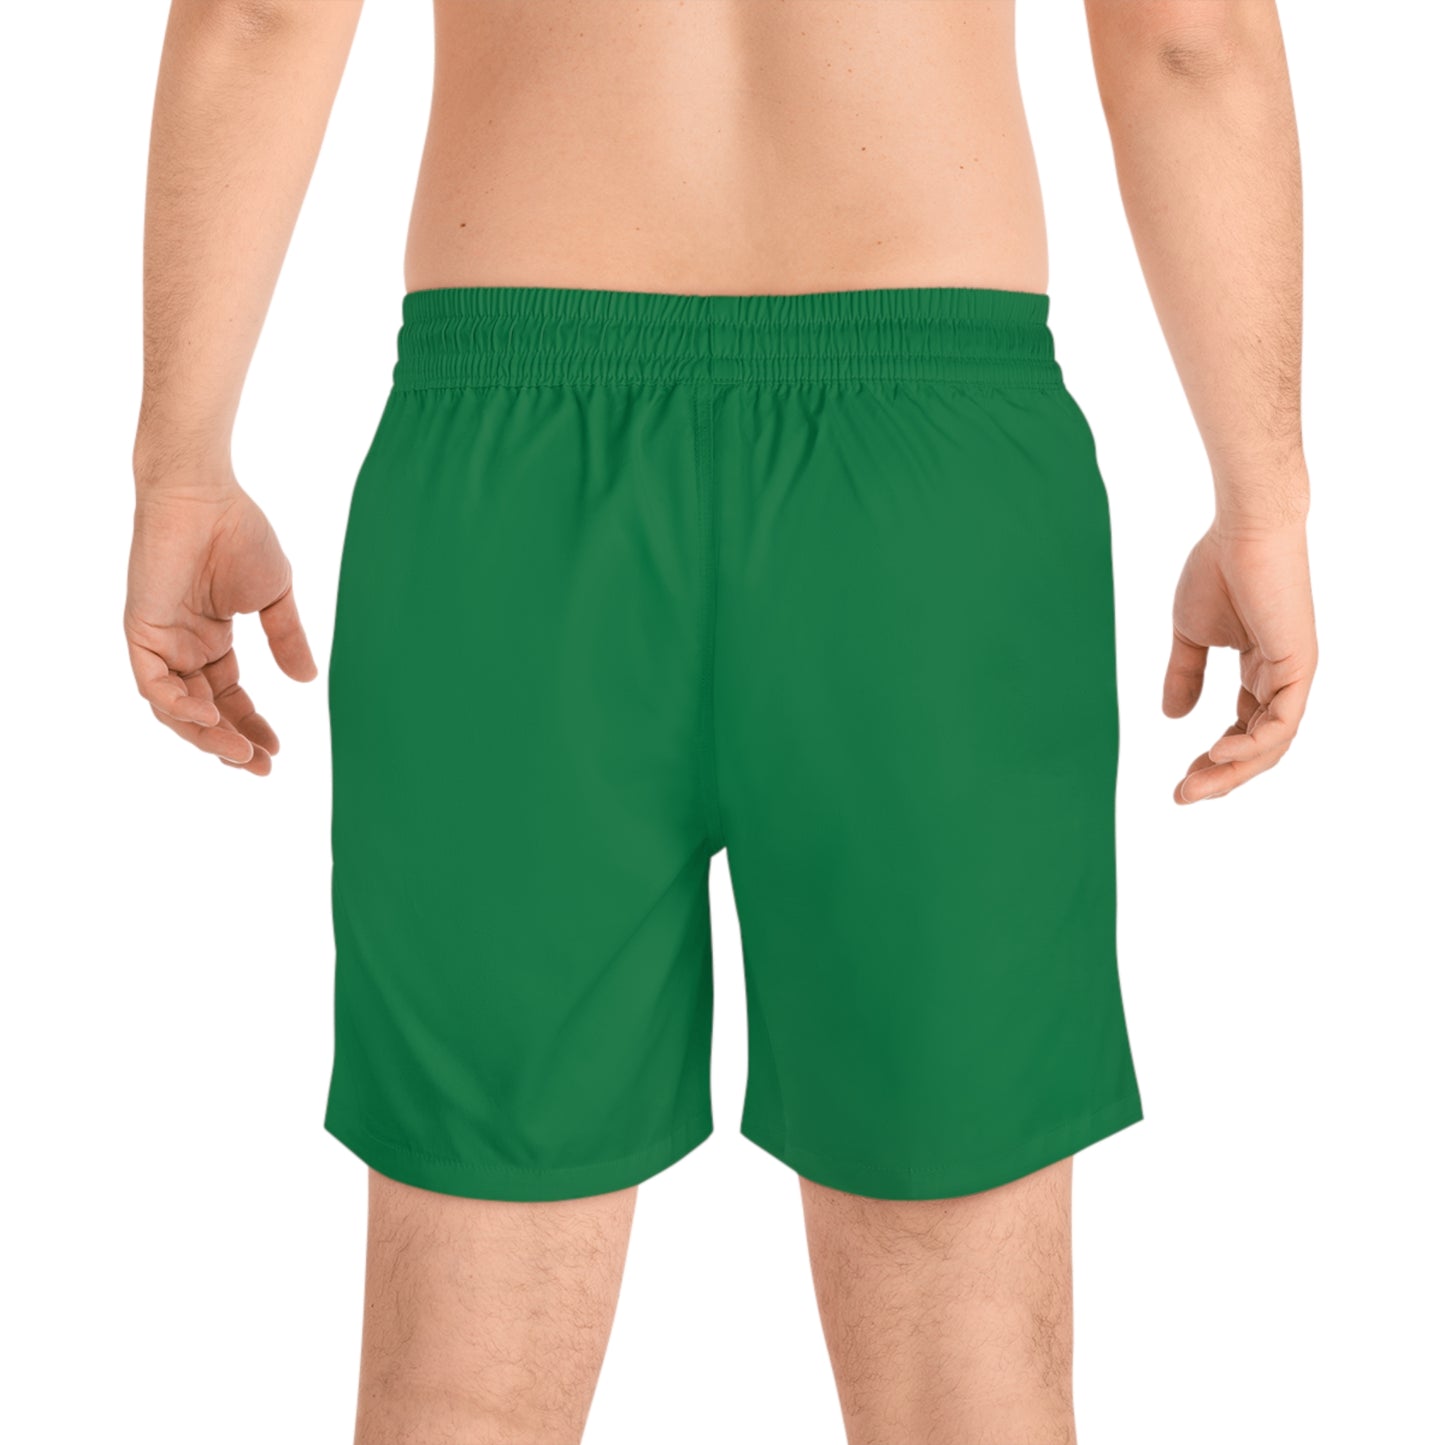 Oregon Shorts